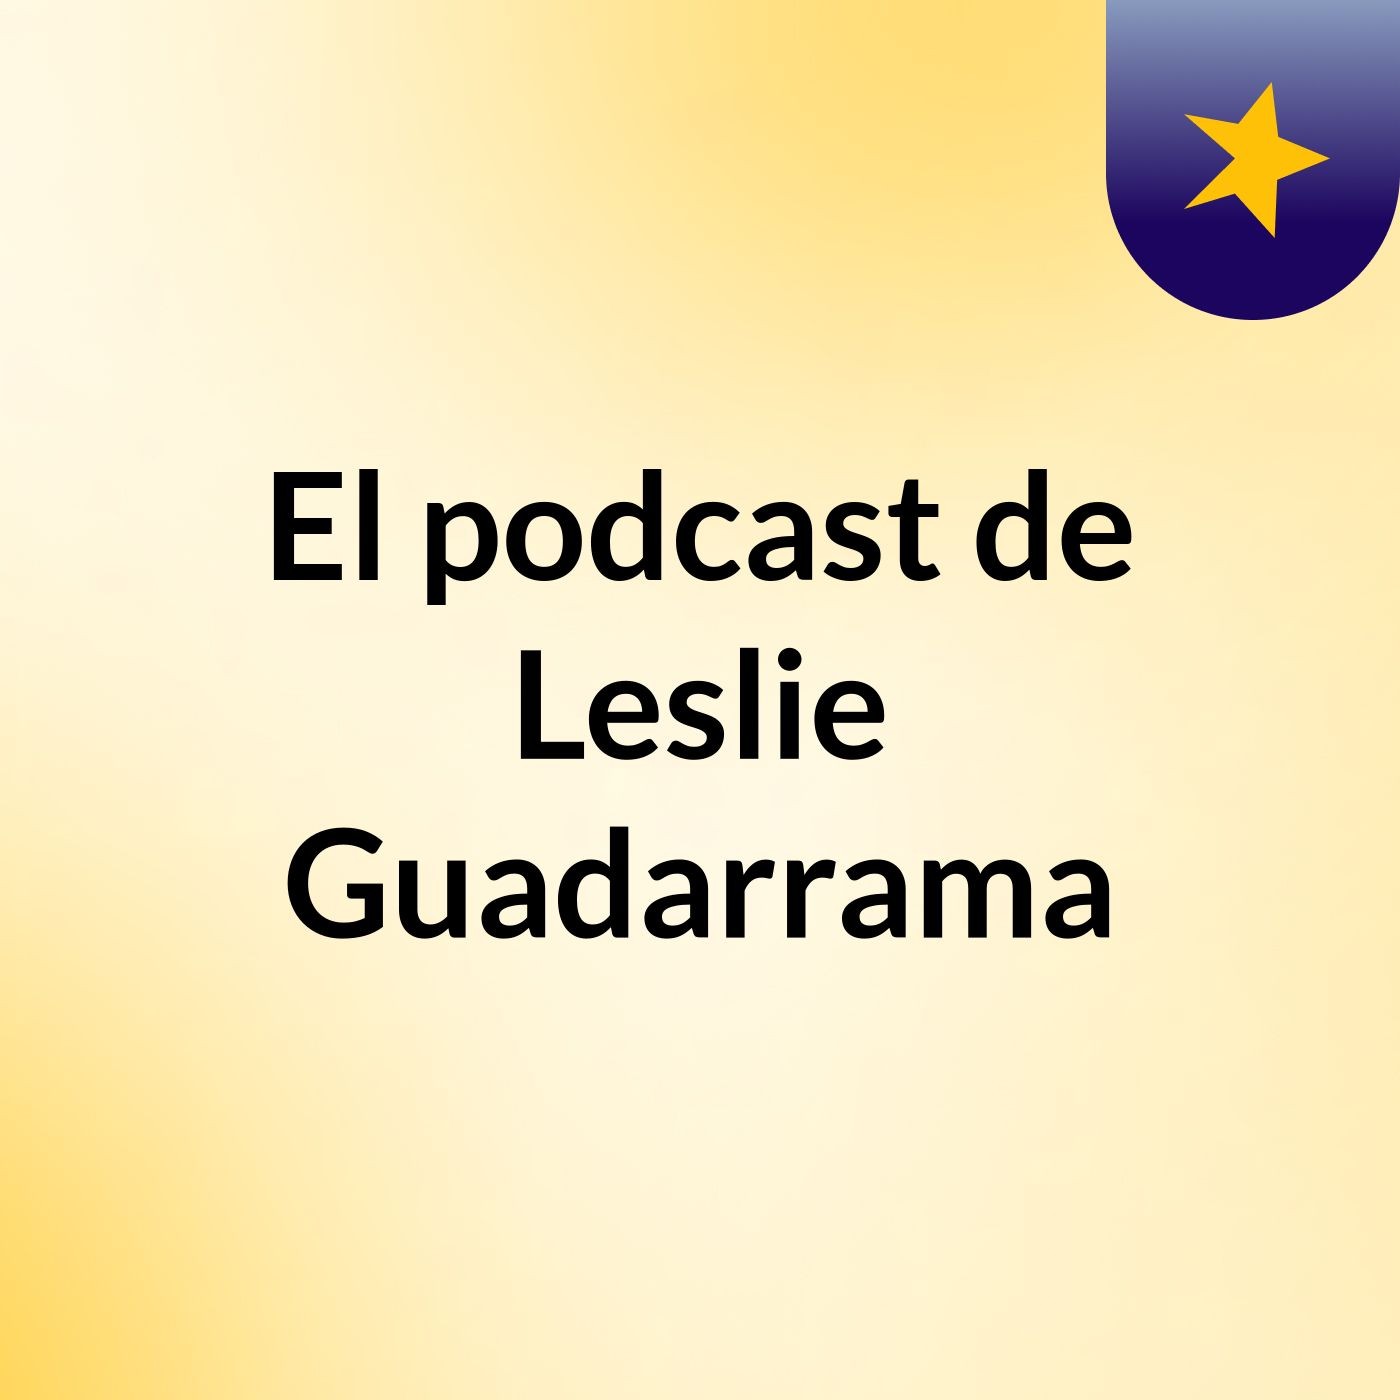 El podcast de Leslie Guadarrama